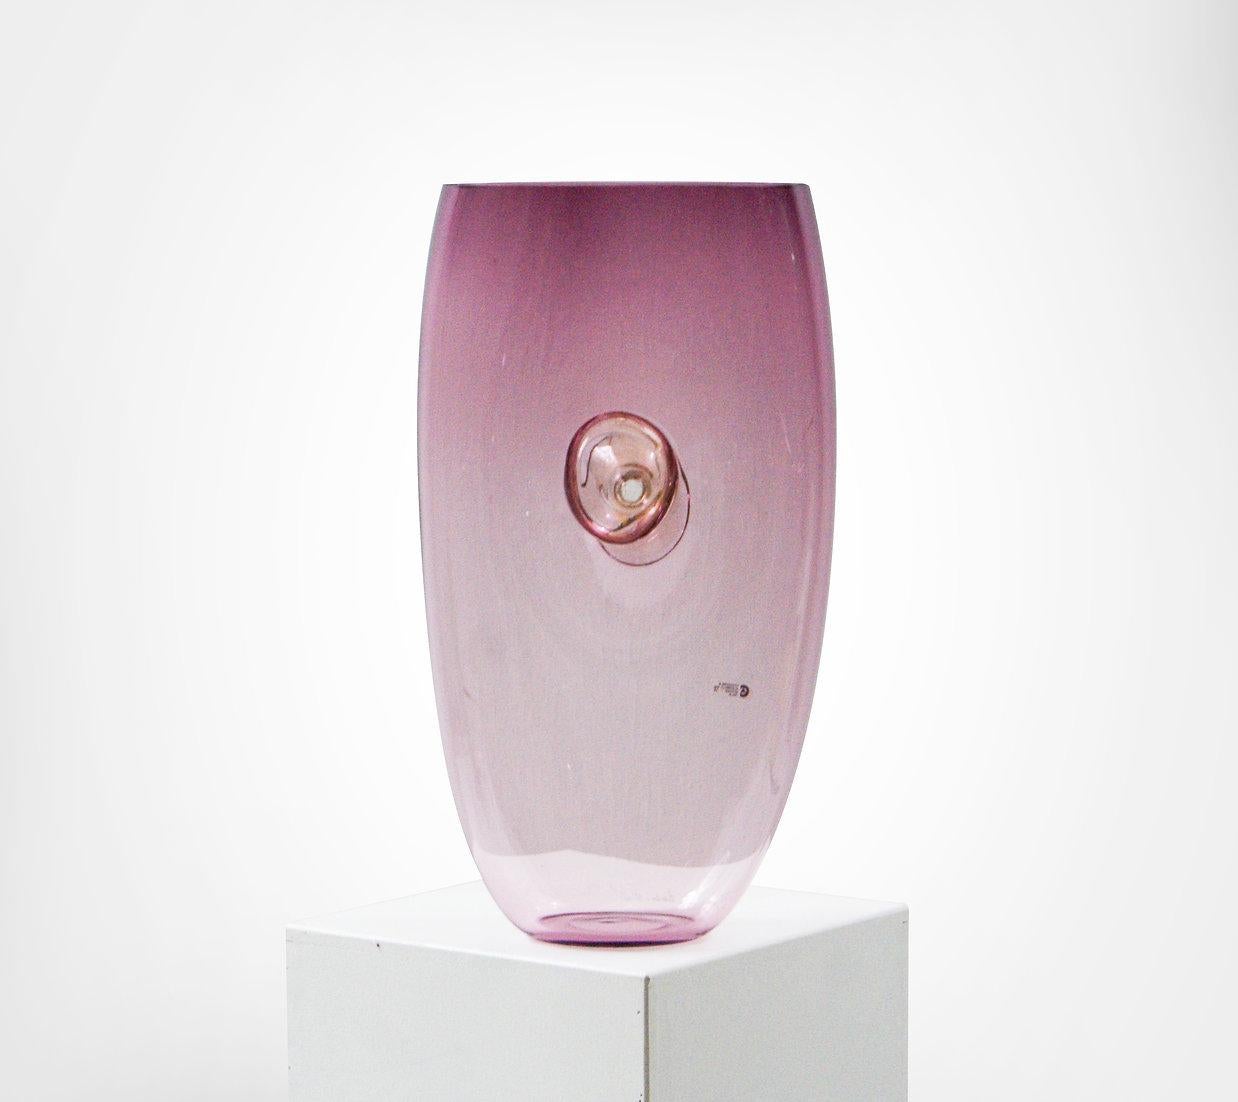 Einzigartige große Vasen aus Murano-Glas.
Entworfen von Gino Cenedese und Maurizio Albarelli für Cenedese et Albarelli, ca. Ende der 1970er Jahre.
Amethystfarbener Farbverlauf, der am Boden in ein rosafarbenes Klarglas übergeht.
Das Mittelteil